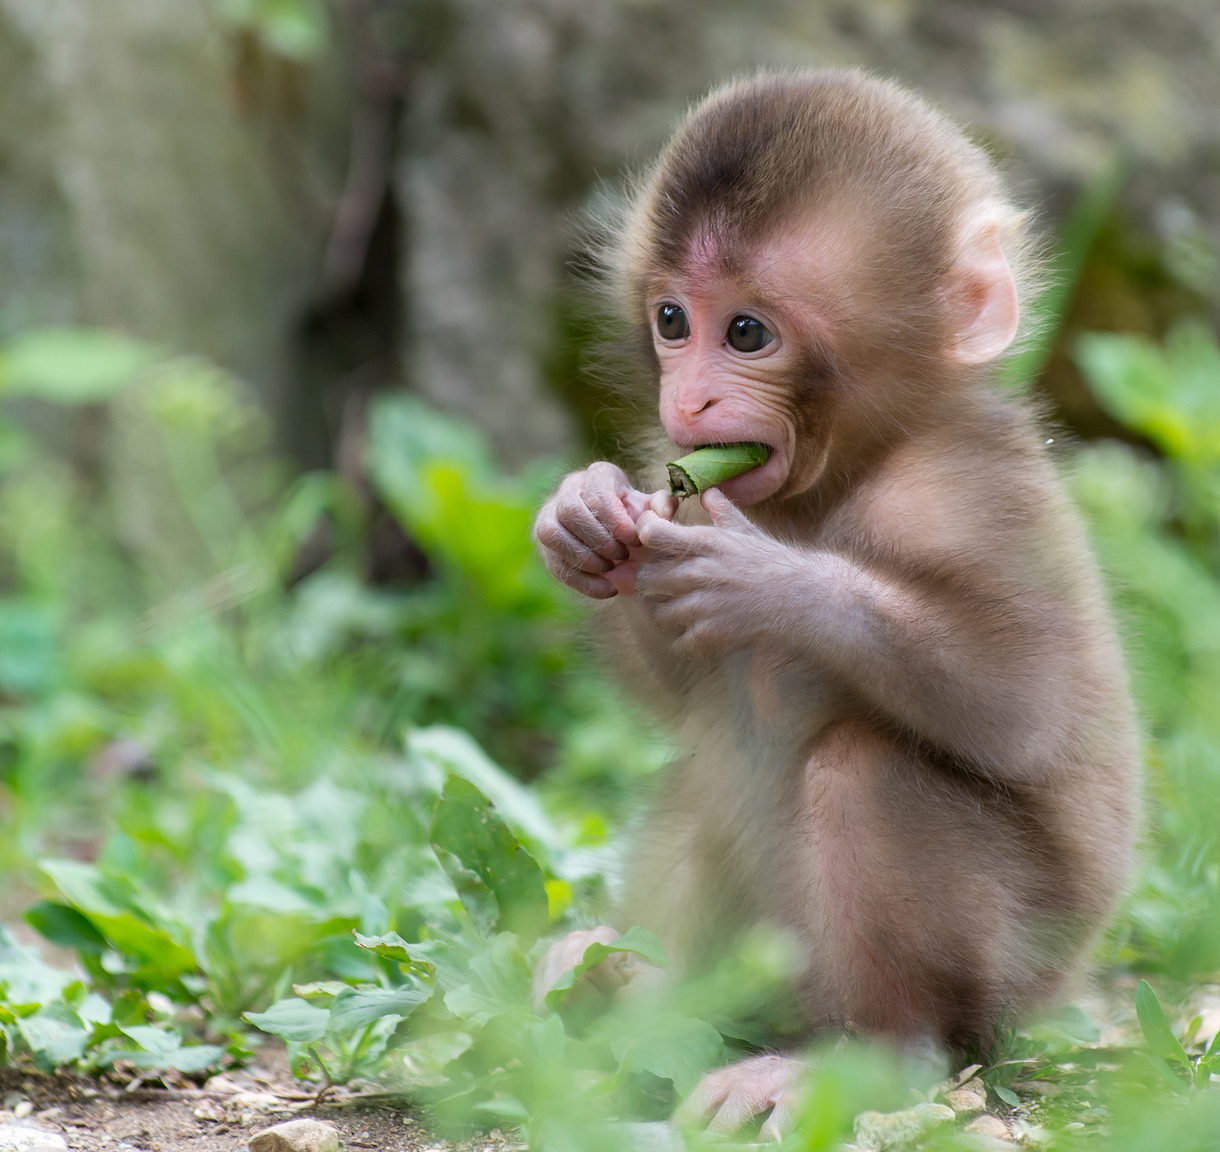 Nếu bạn yêu thích vật nuôi đáng yêu và đang tìm kiếm một con vật nhỏ bé dễ thương, hãy xem hình ảnh của chú khỉ đáng yêu đáng yêu này. Hình ảnh này sẽ khiến bạn phải cười toe toét và cảm thấy hạnh phúc khi được làm quen với chú khỉ đáng yêu này.